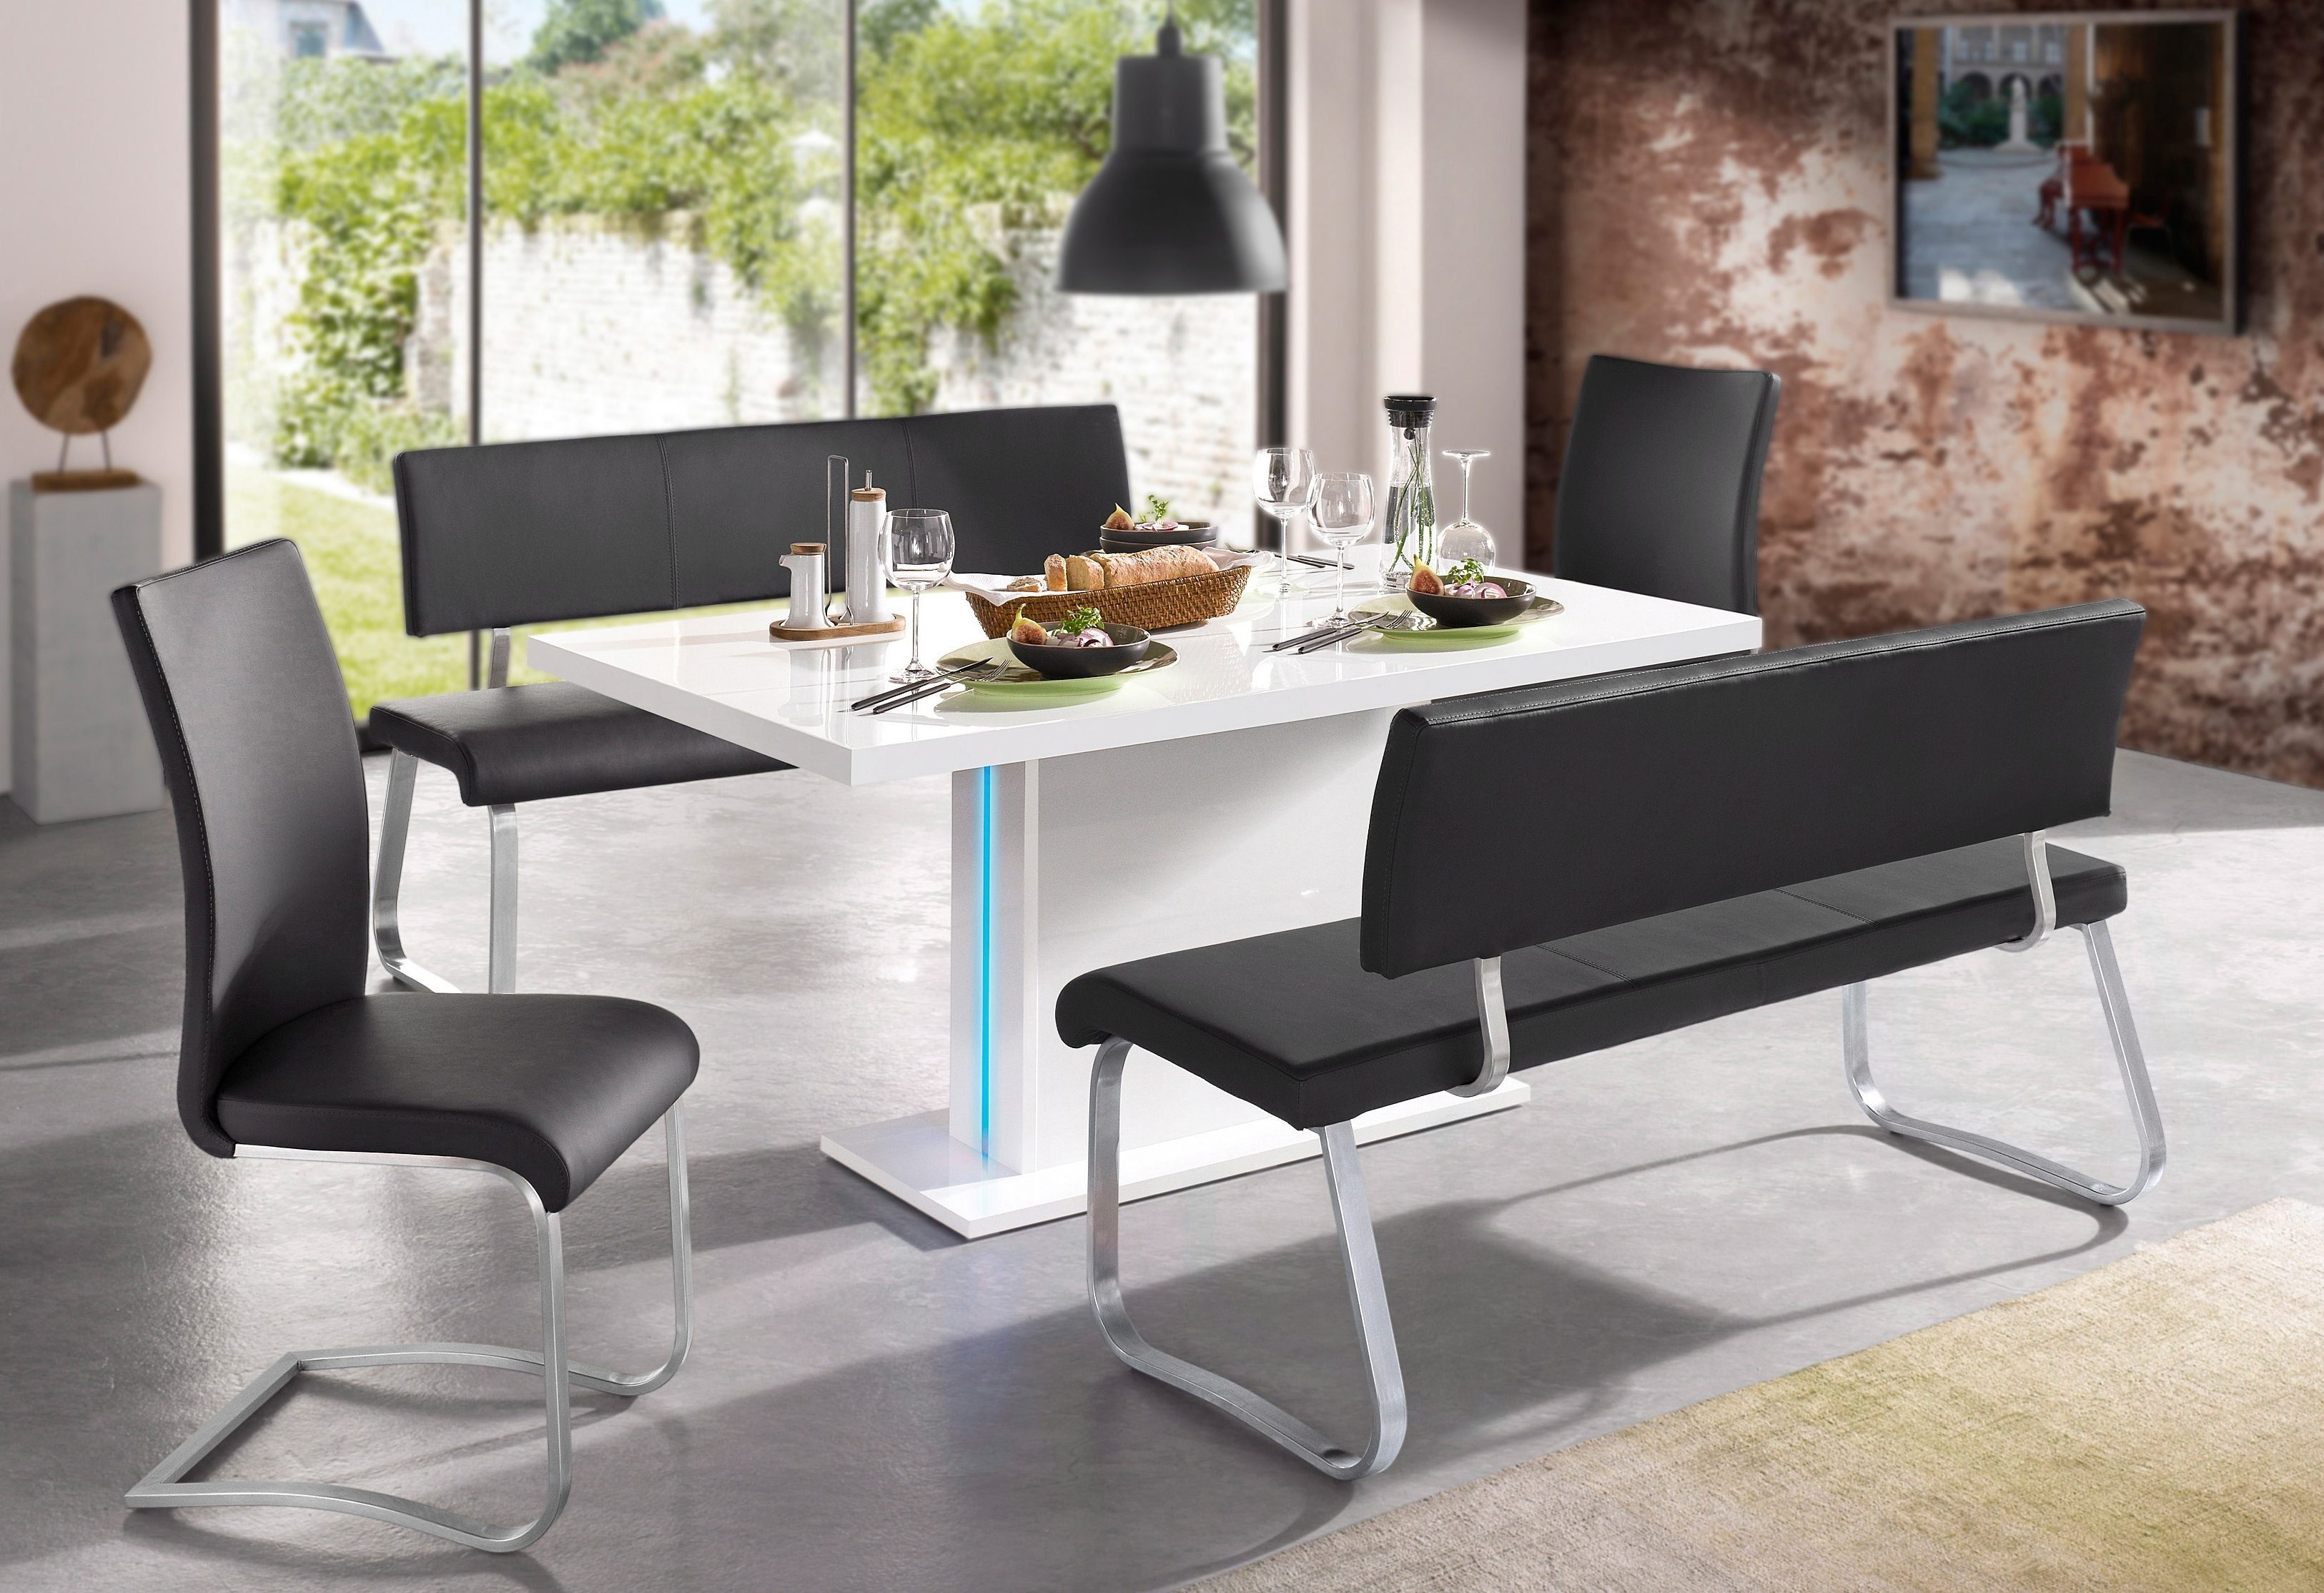 MCA furniture Polsterbank Arco, belastbar 280 in bis schwarz verschiedenen Breiten Kg, Echtleder